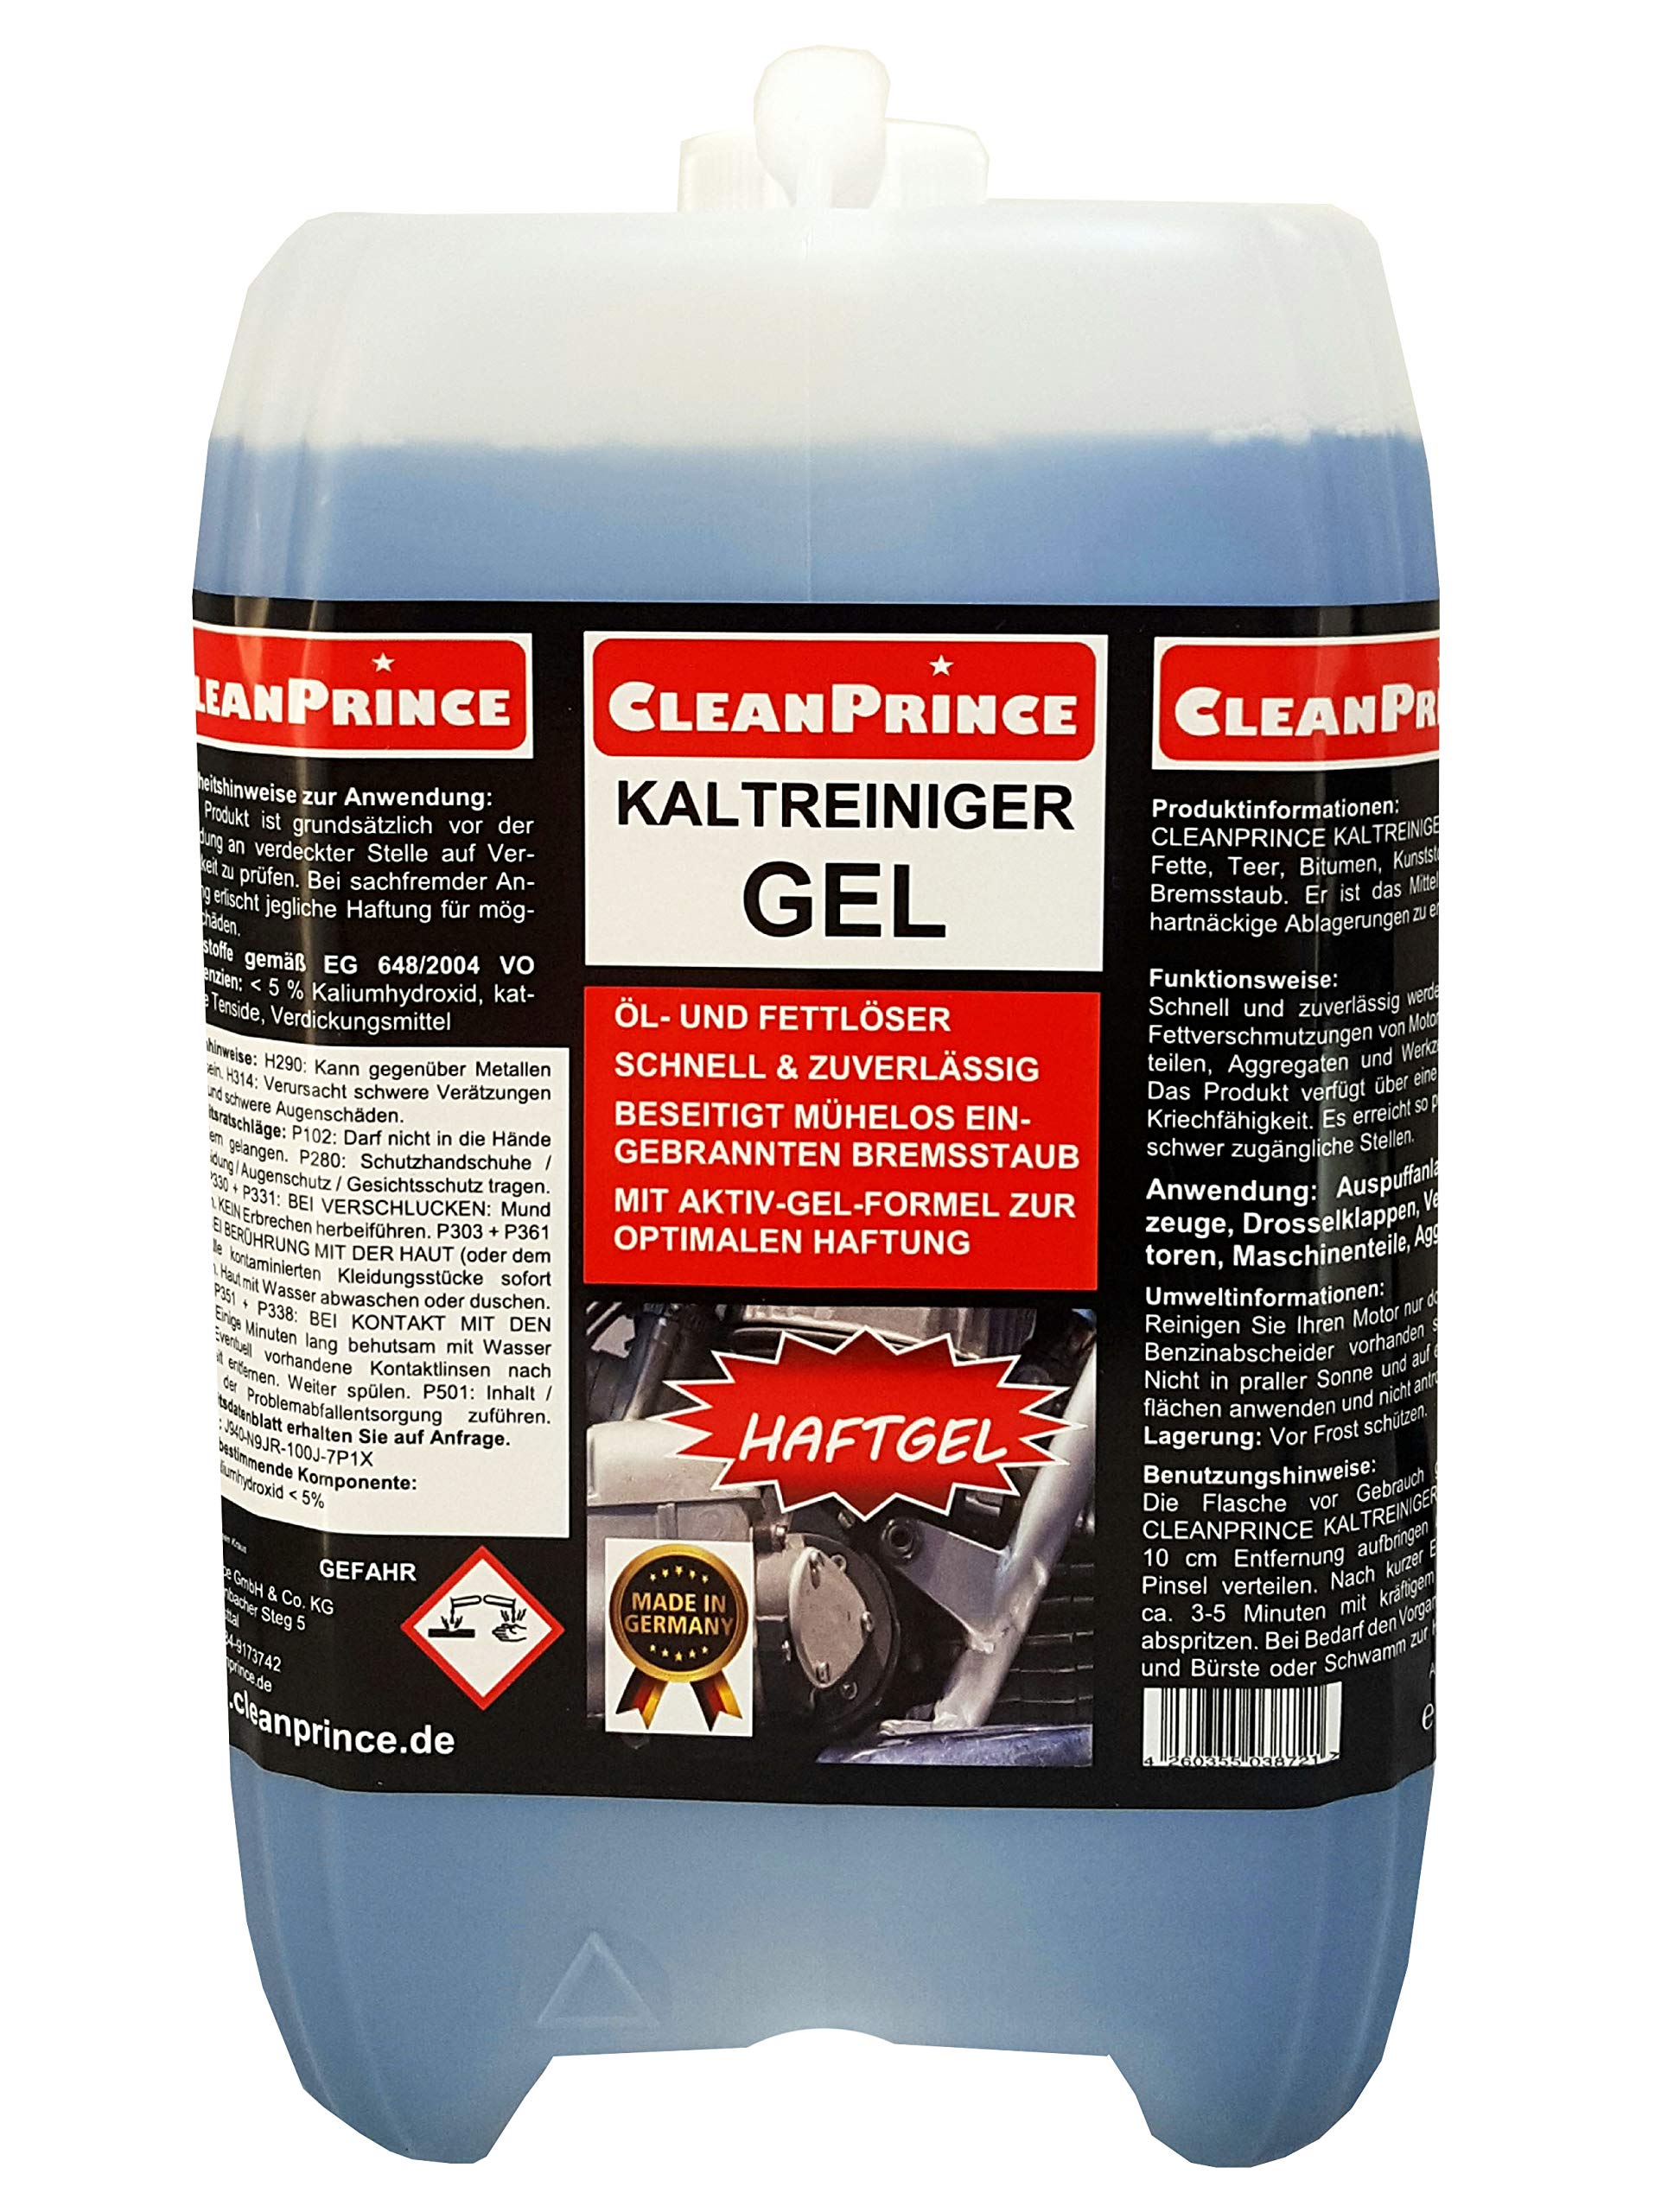 CleanPrince Kaltreiniger Gel 5 Liter Motorkaltreiniger Haftgel für Felgen Auspuffanlagen Maschinen Motoren Reinigungsmittel